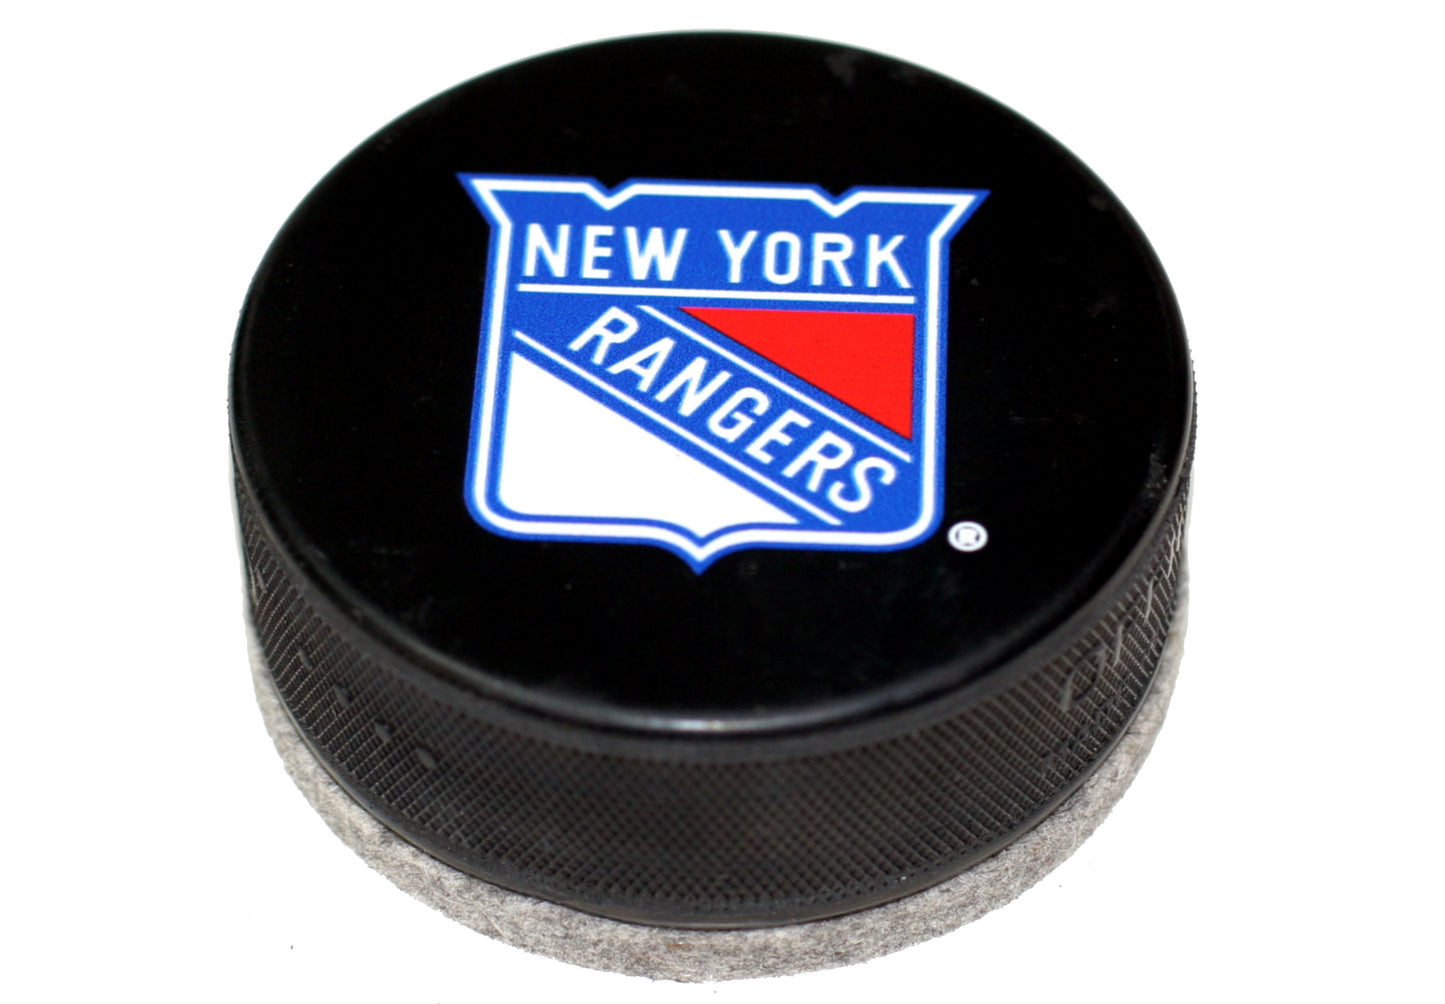 New York Rangers Basic Series Hockey Puck Eraser For Chalk & Whiteboards